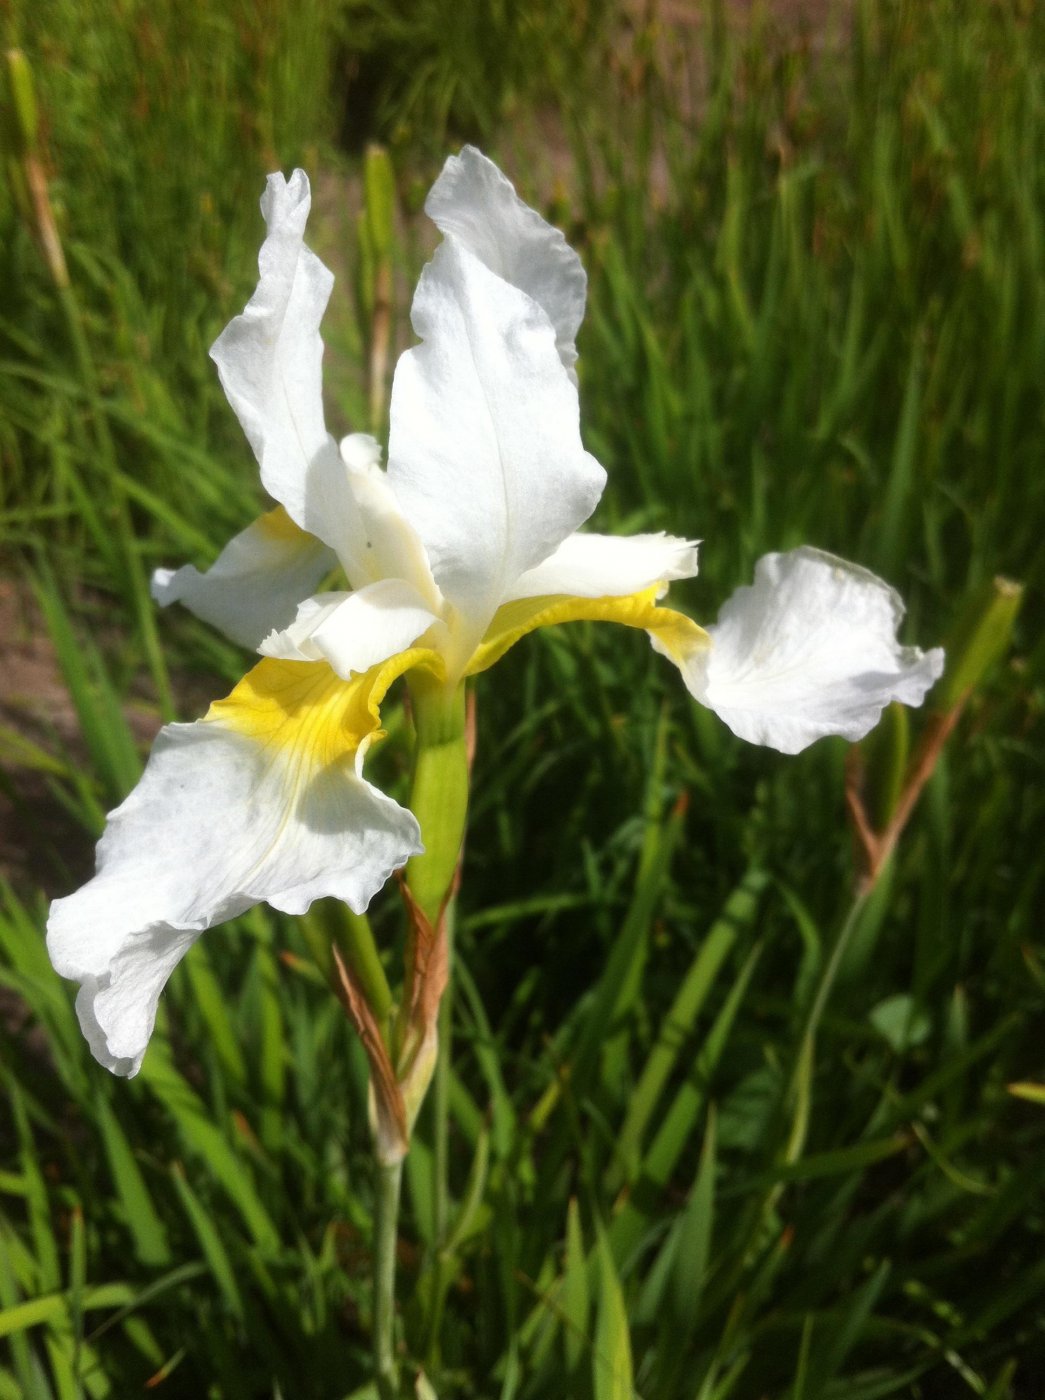 Iris sibirica L. cv. Snow crest